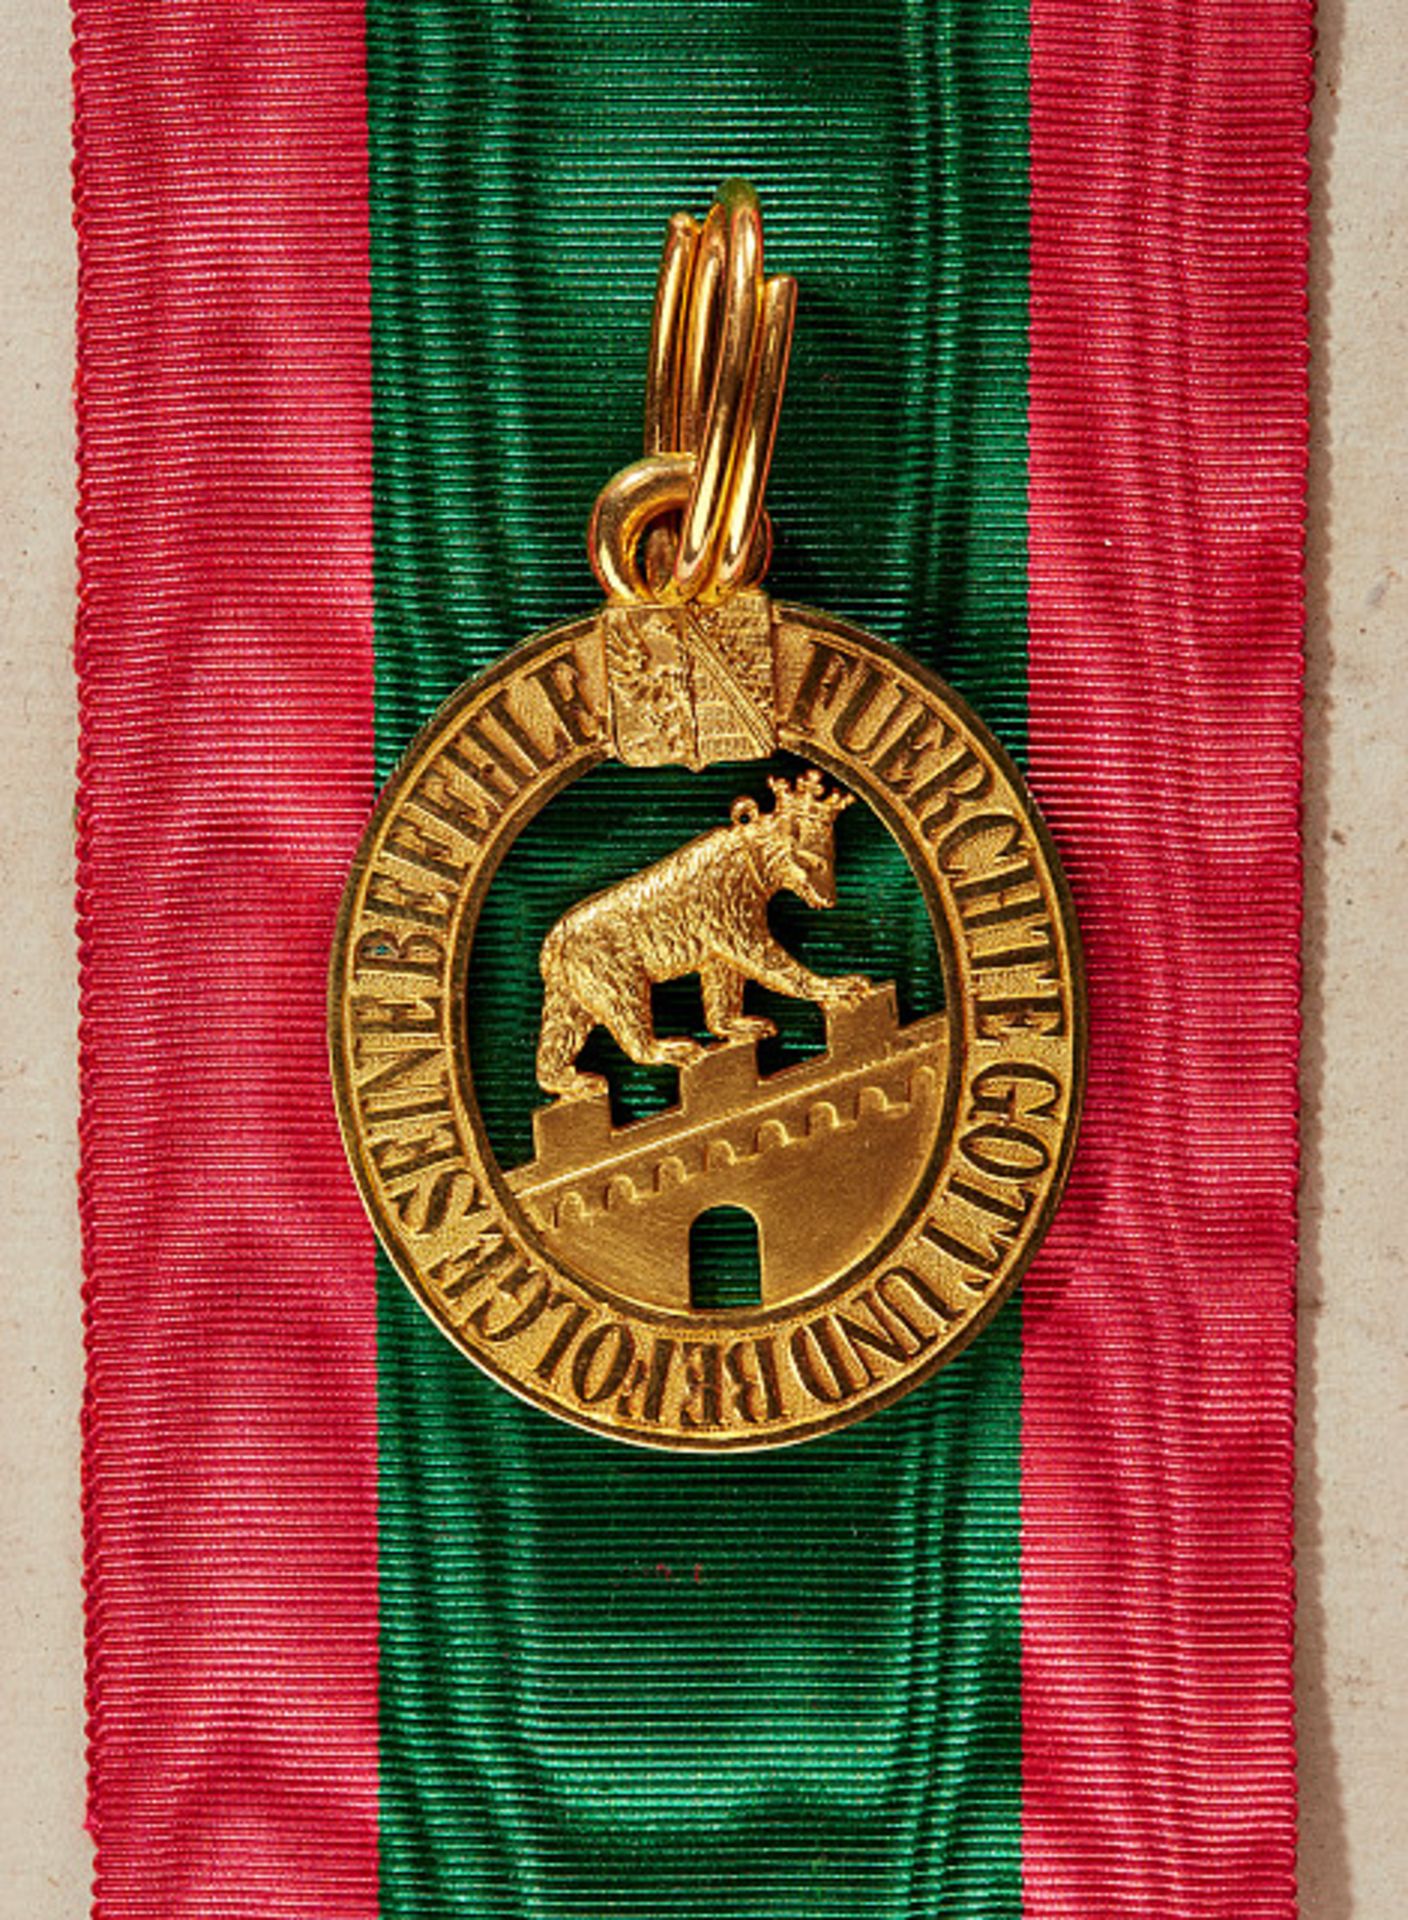 HERZOGTUM ANHALT - ORDEN ALBRECHT DES BÄREN : Komtursatz 1. Klasse.Die Ordensdekoration Bronze - Bild 3 aus 5